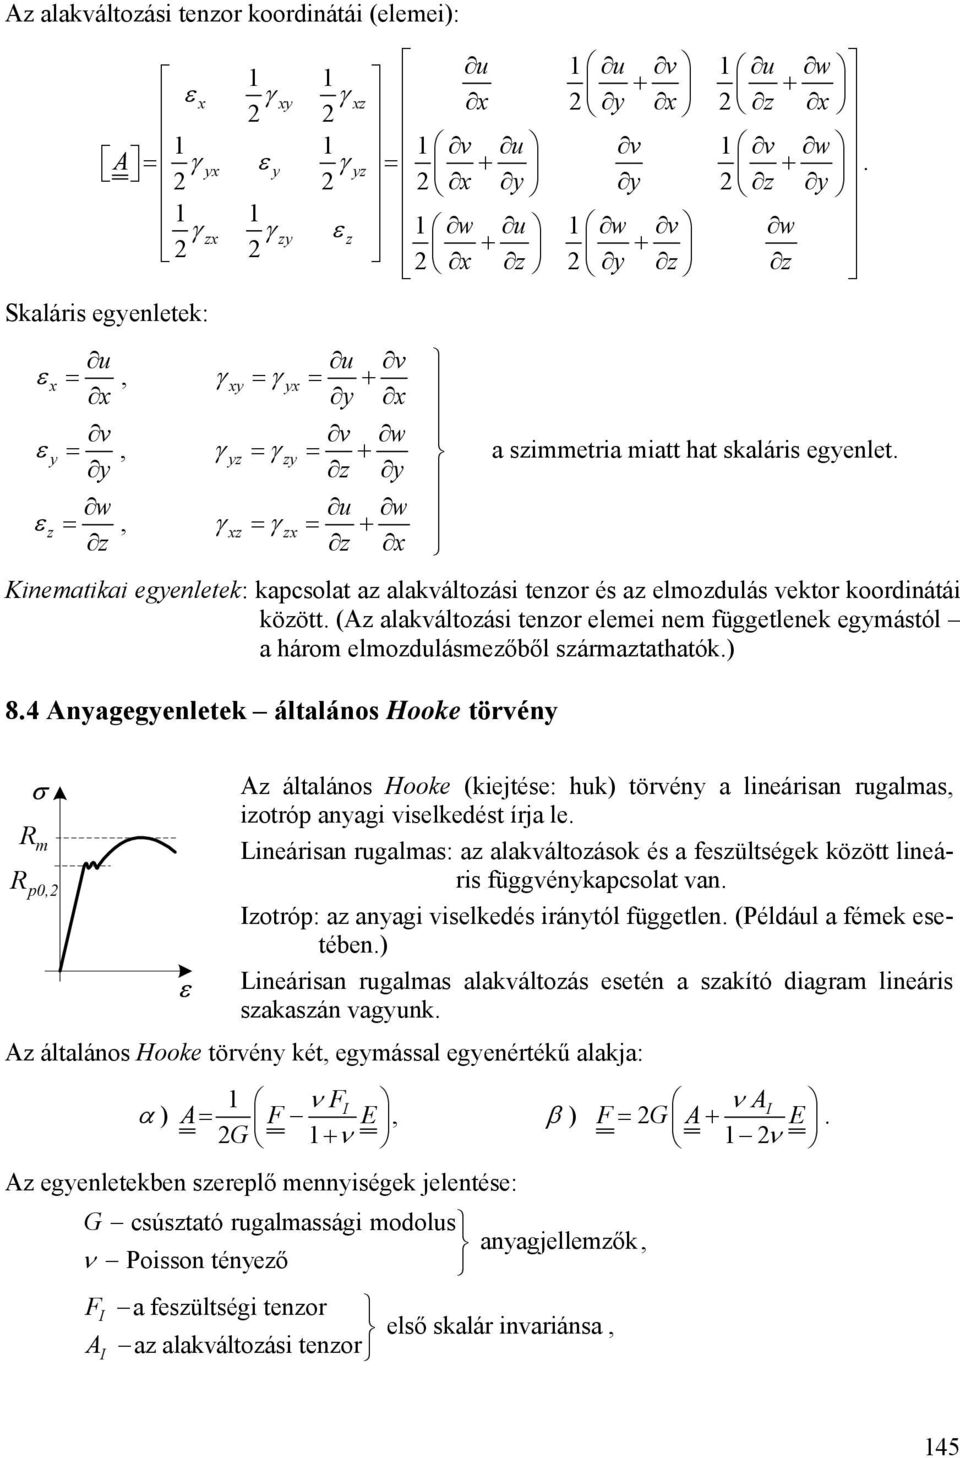 sármatathatók) 8 Anagegenletek általános Hooke törvén A általános Hooke (kiejtése: huk) törvén a lineárisan rugalmas iotróp anagi viselkedést írja le R m Lineárisan rugalmas: a alakváltoások és a